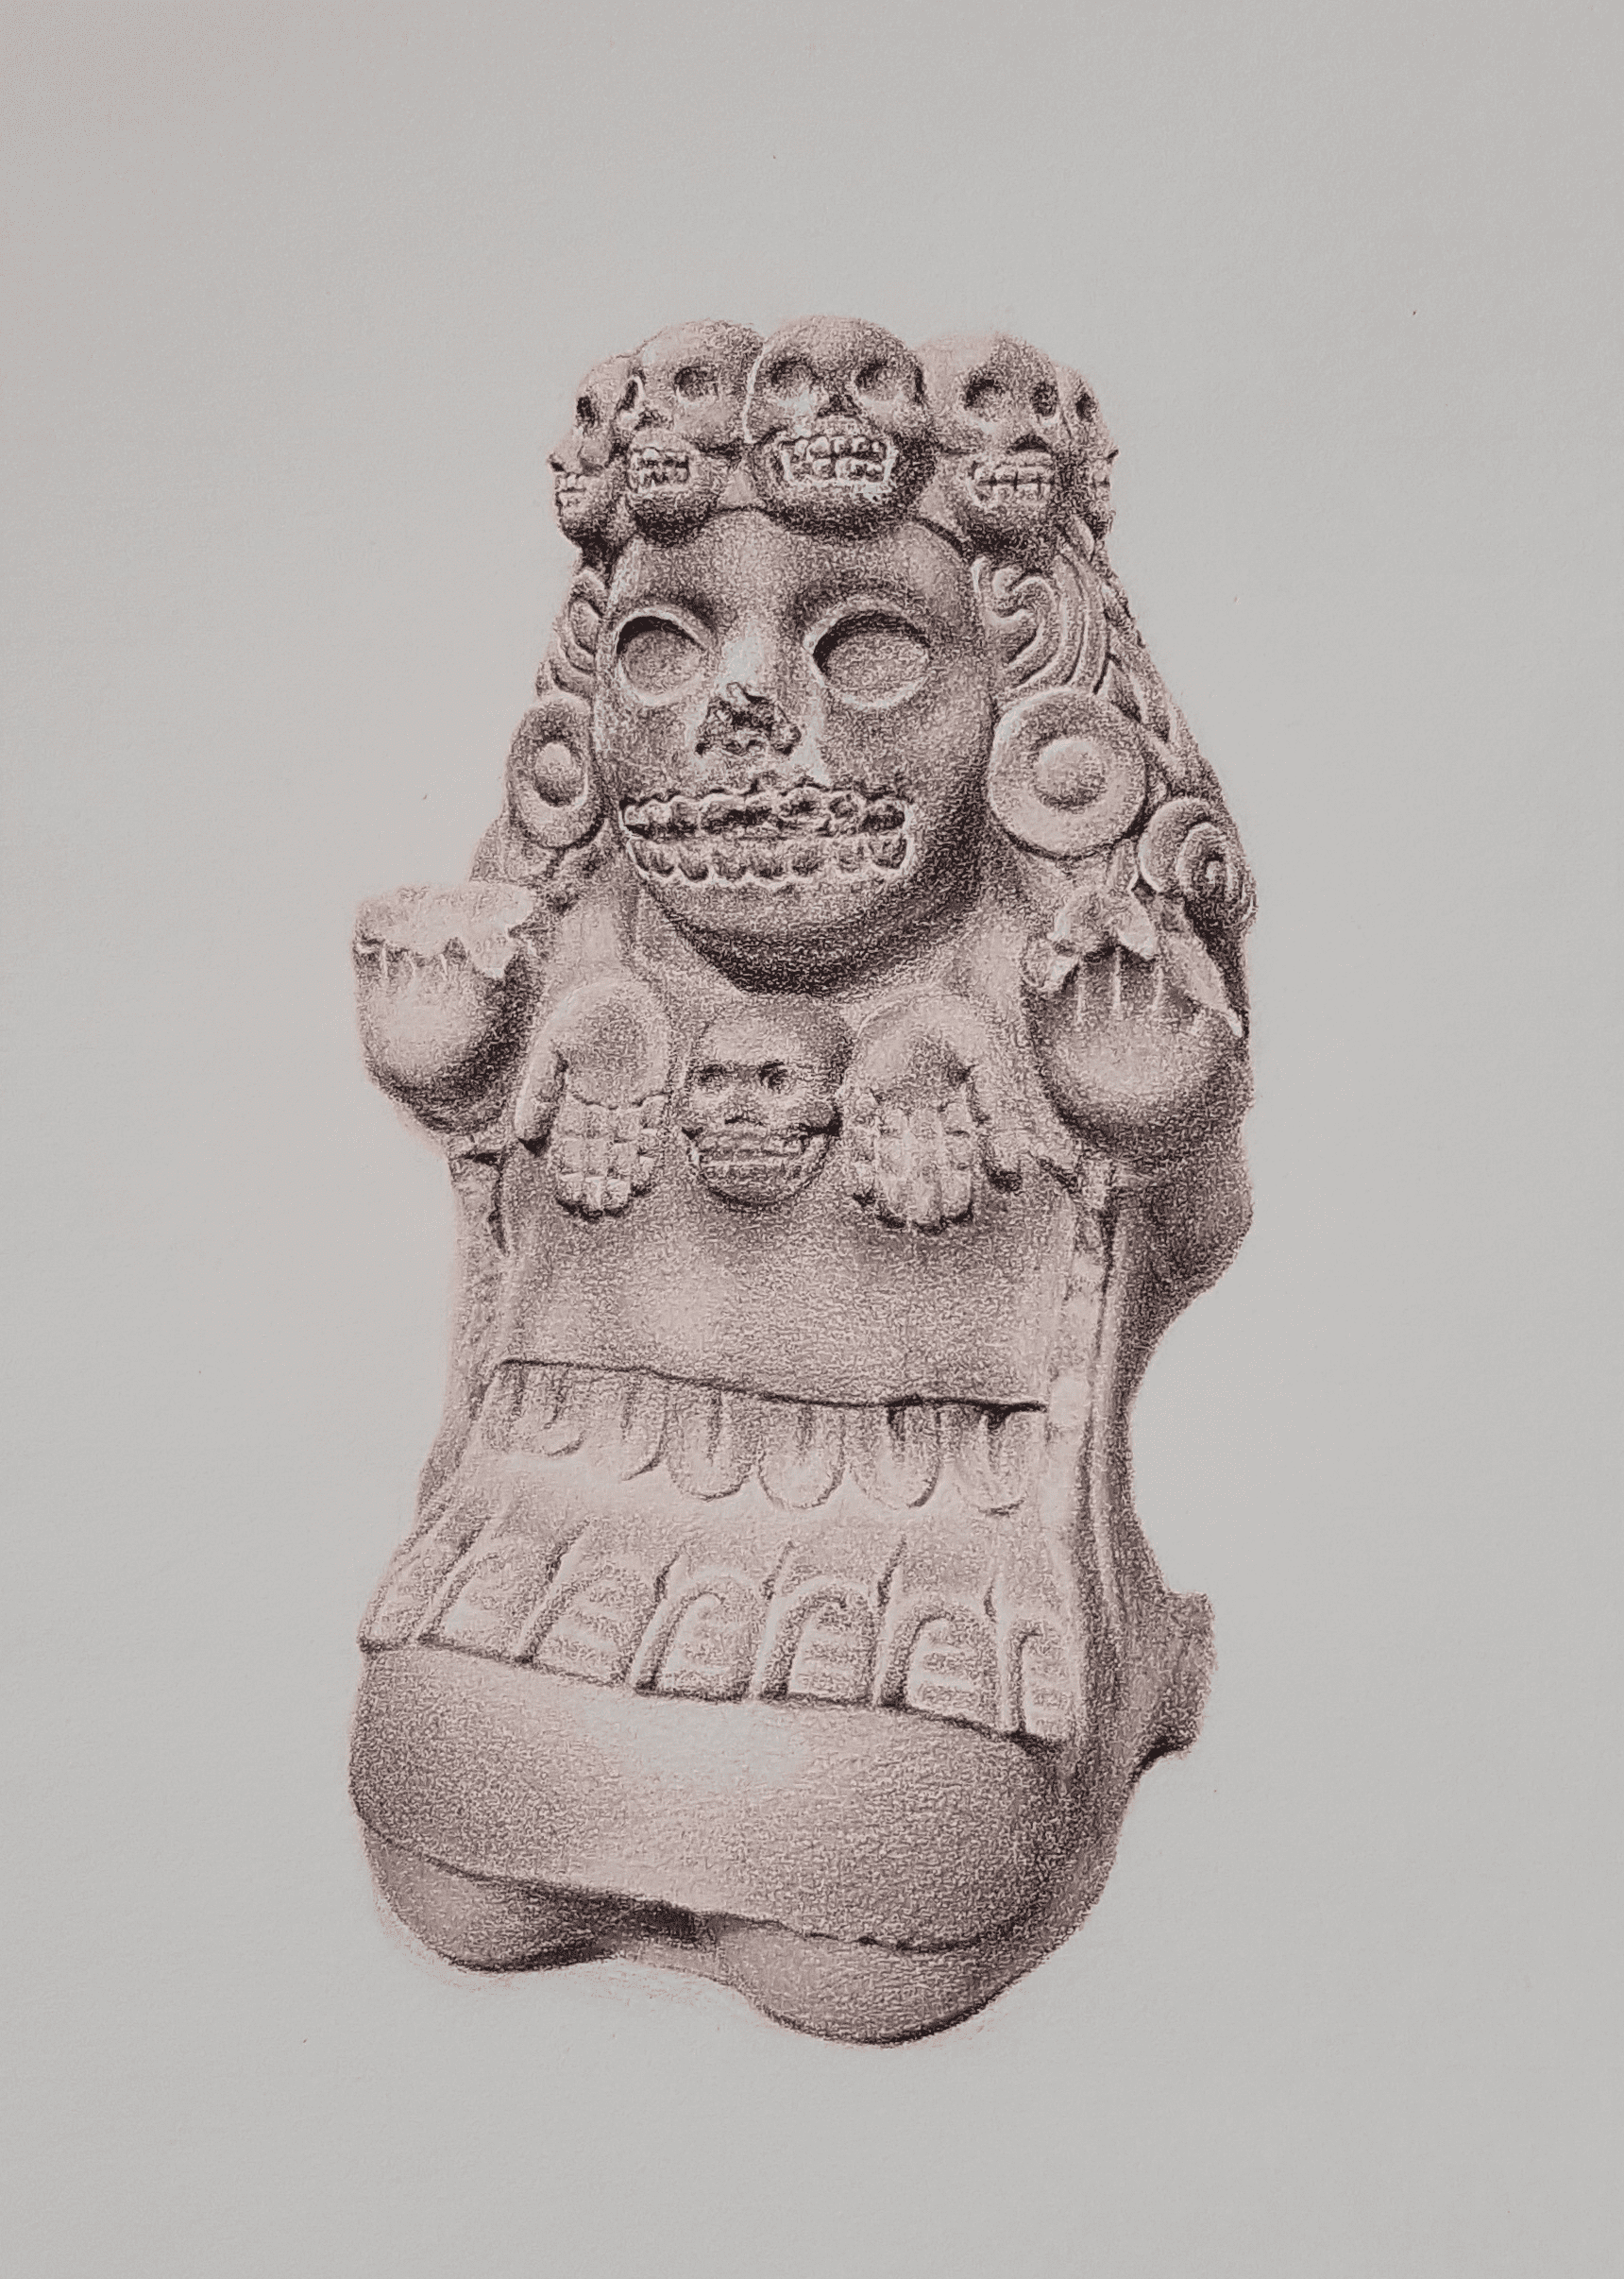 Série de dessins de sculptures préhispaniques par monlag